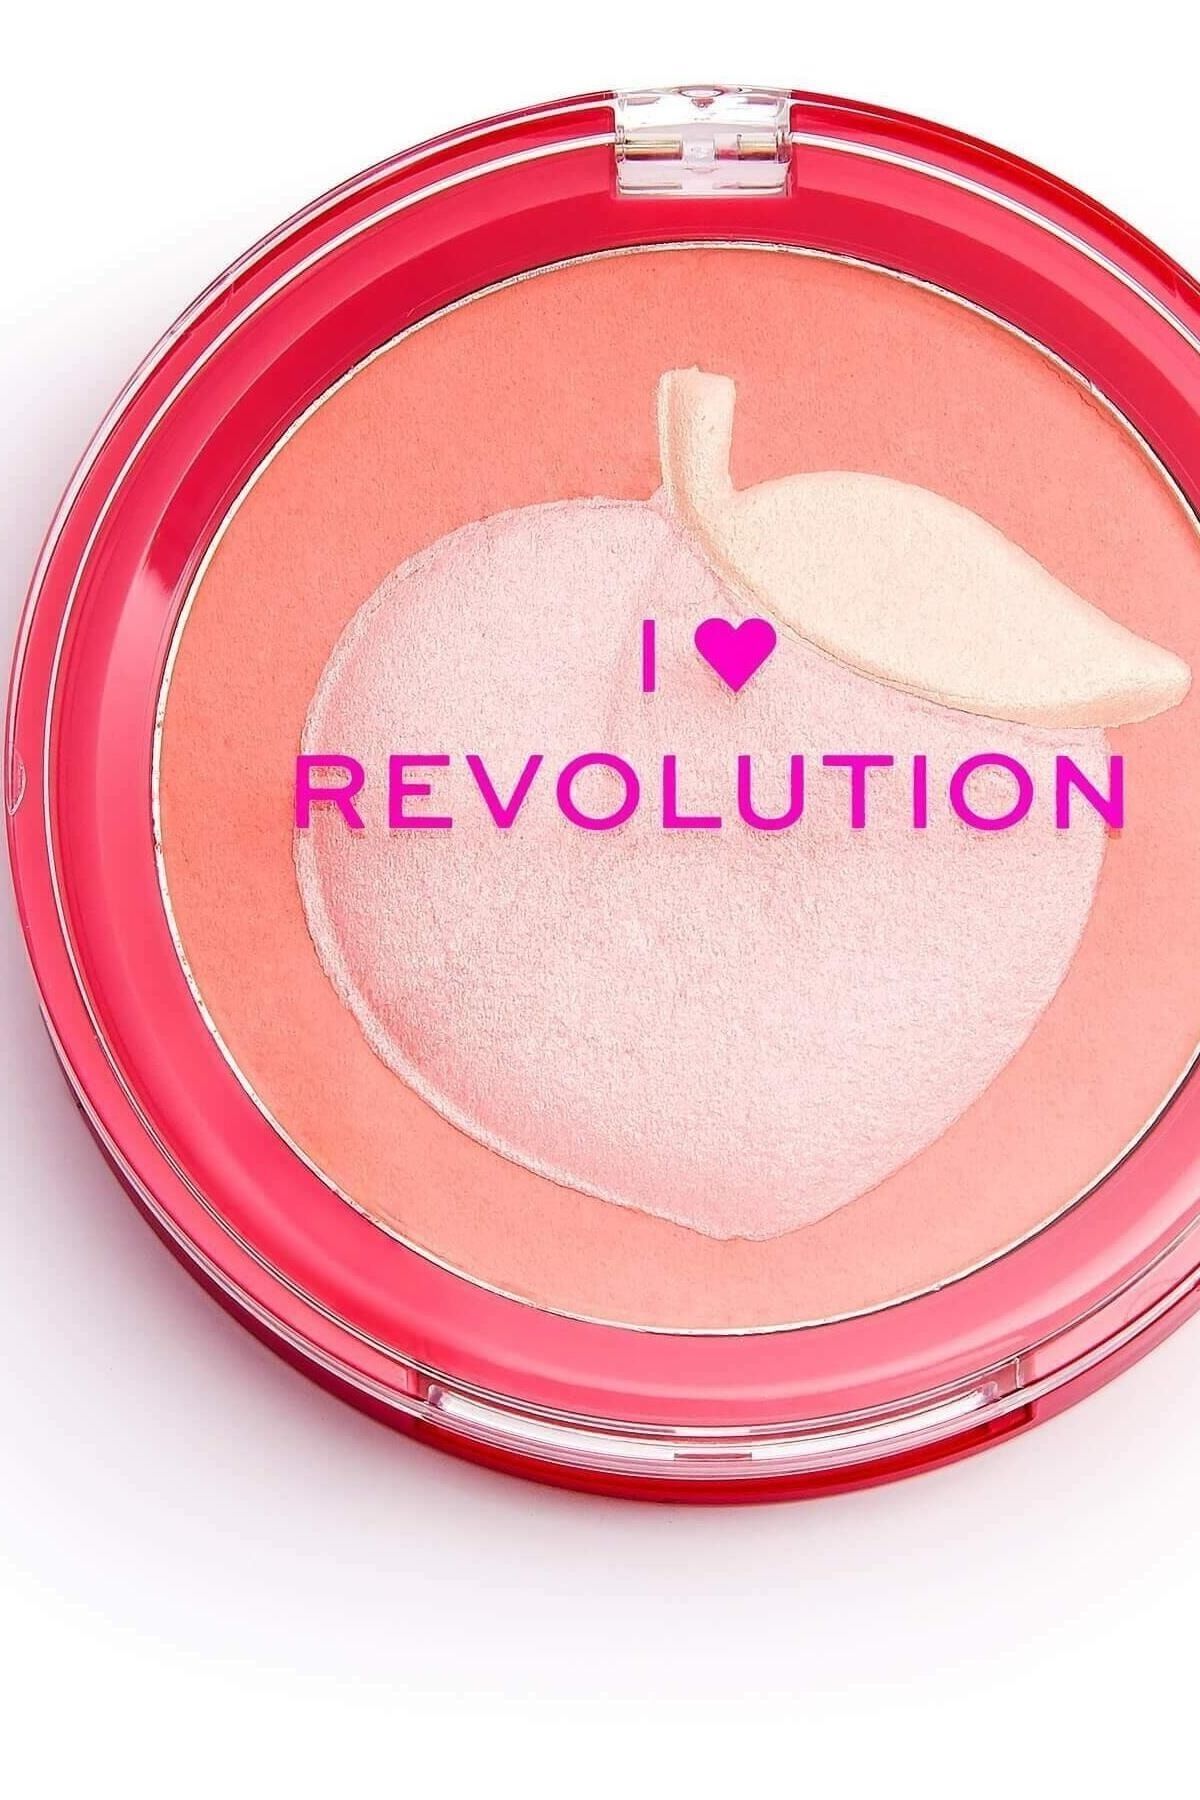 I Heart Revolution Marka: I Heart Revolution Fruity Peach Allık Kategori: Allık